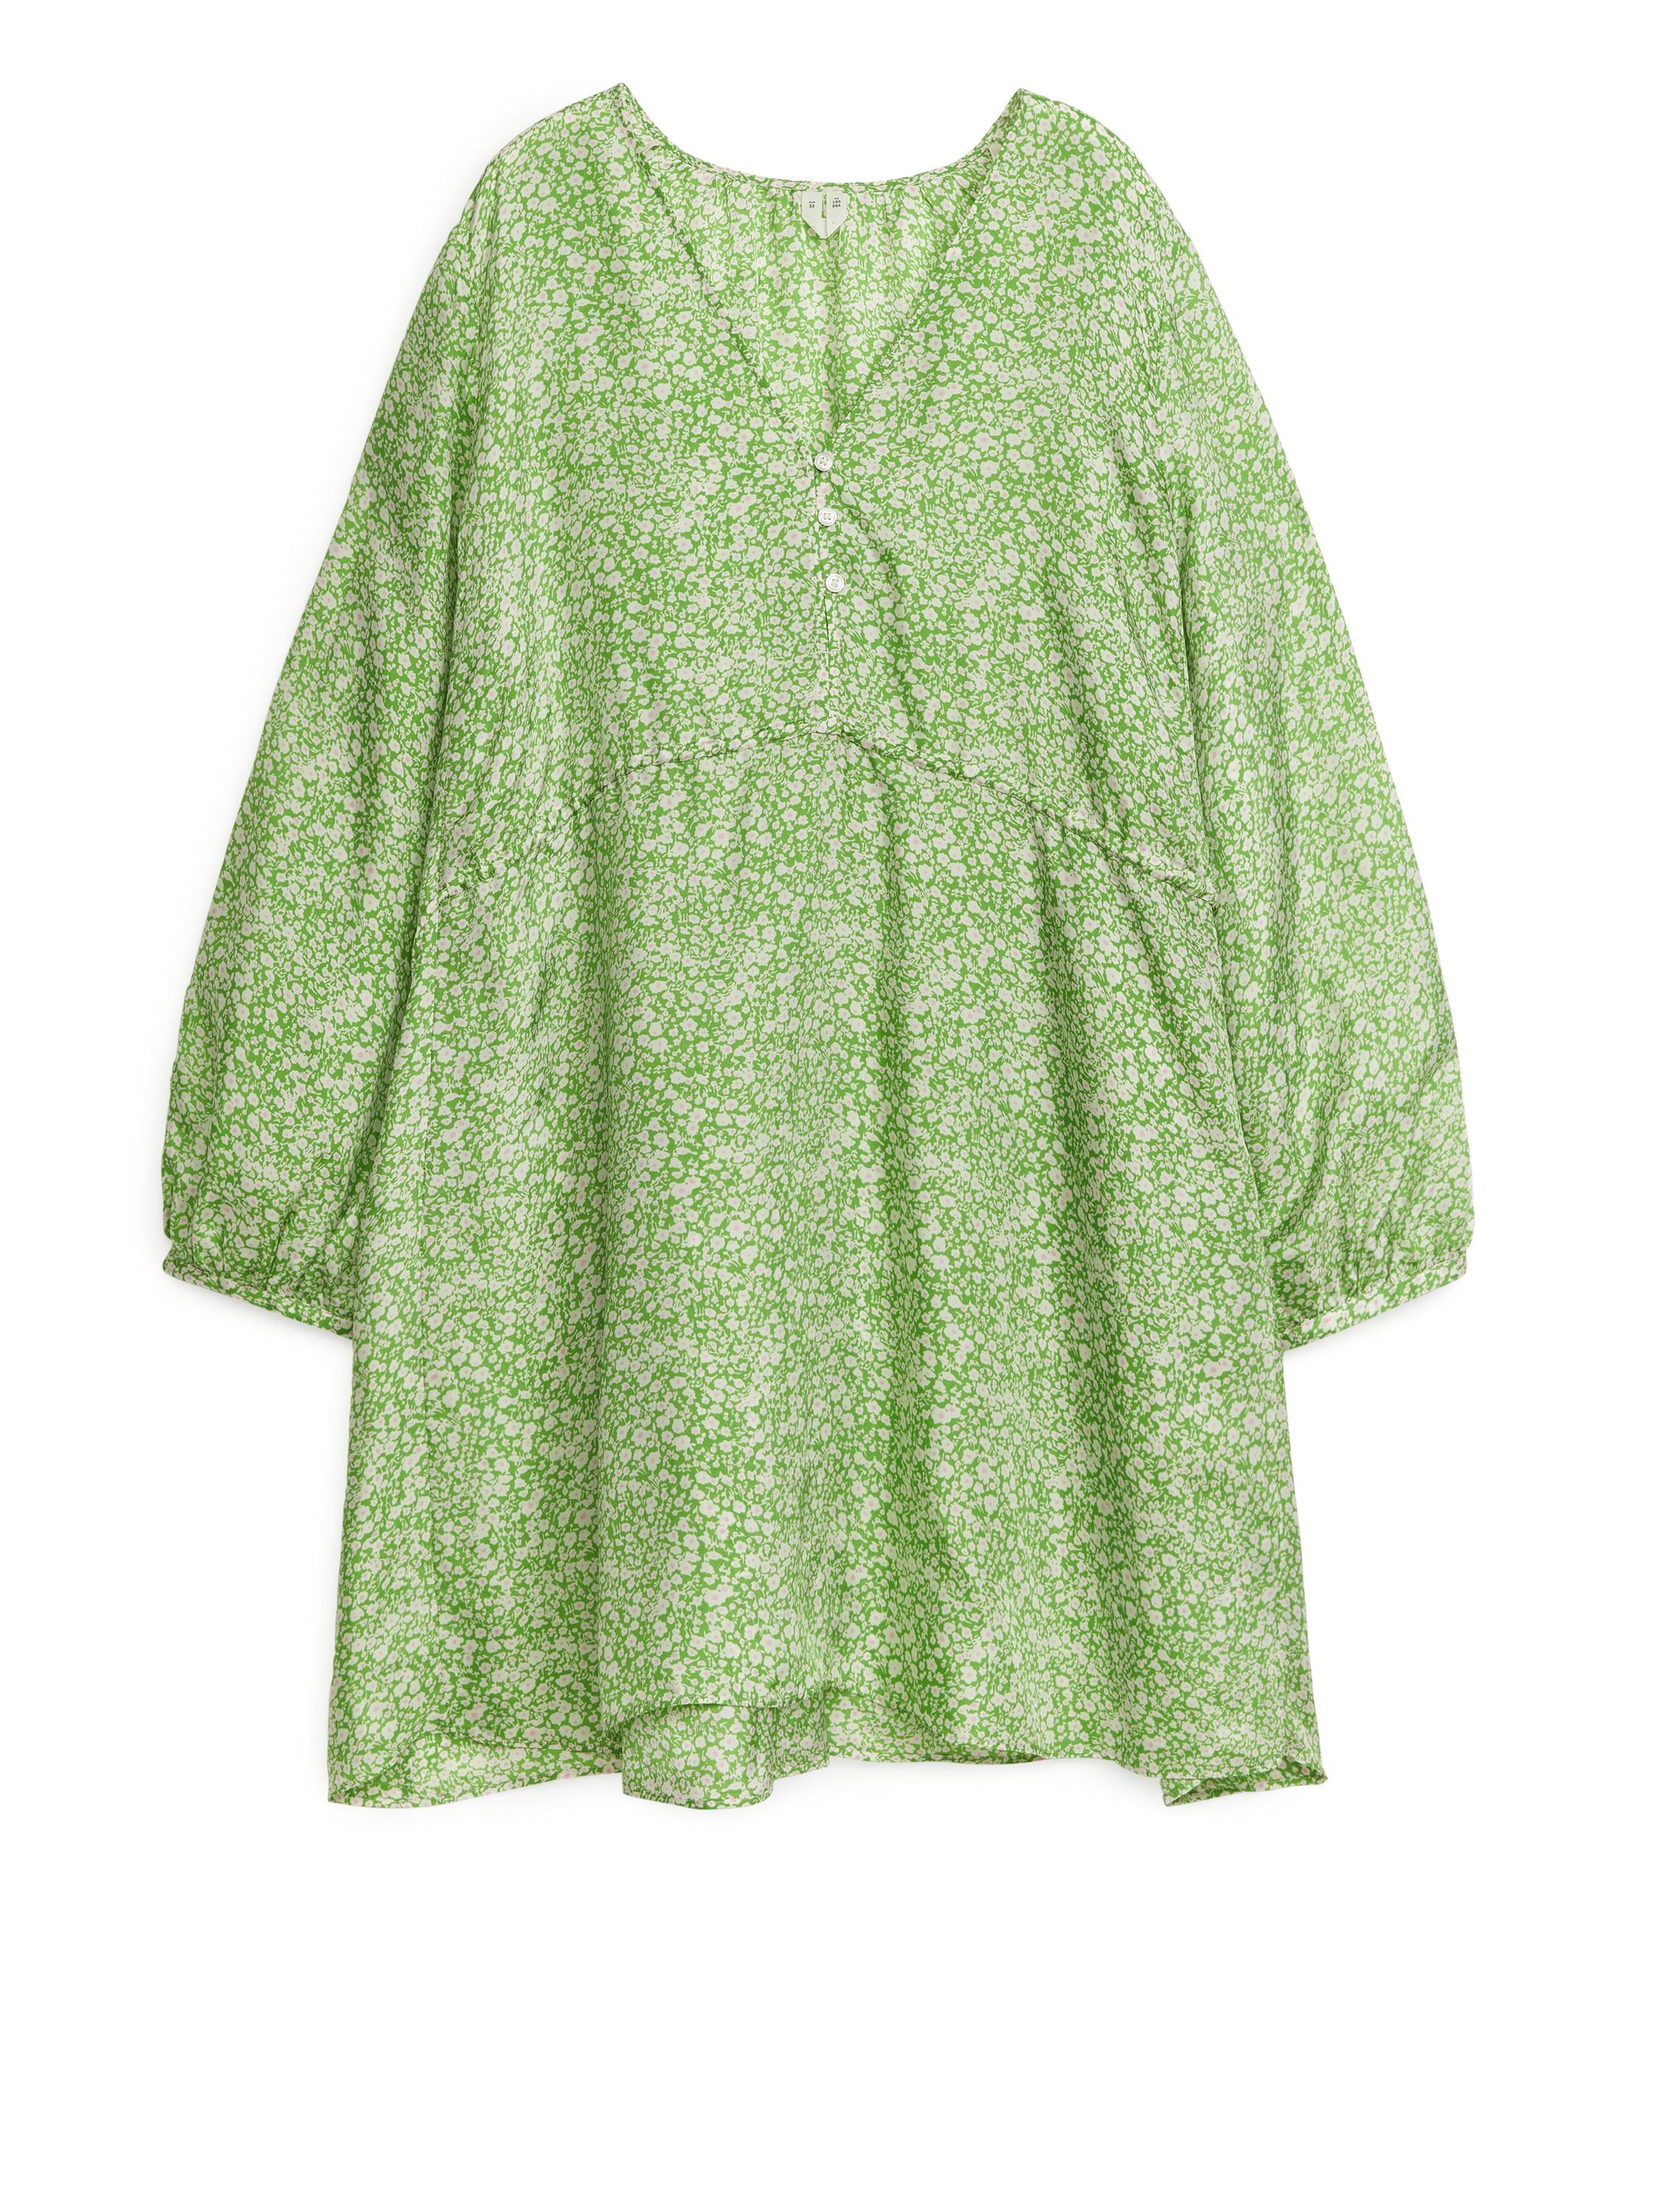 Billede af Arket A-formet Minikjole Grøn/hvid, Hverdagskjoler. Farve: Green/white I størrelse 34